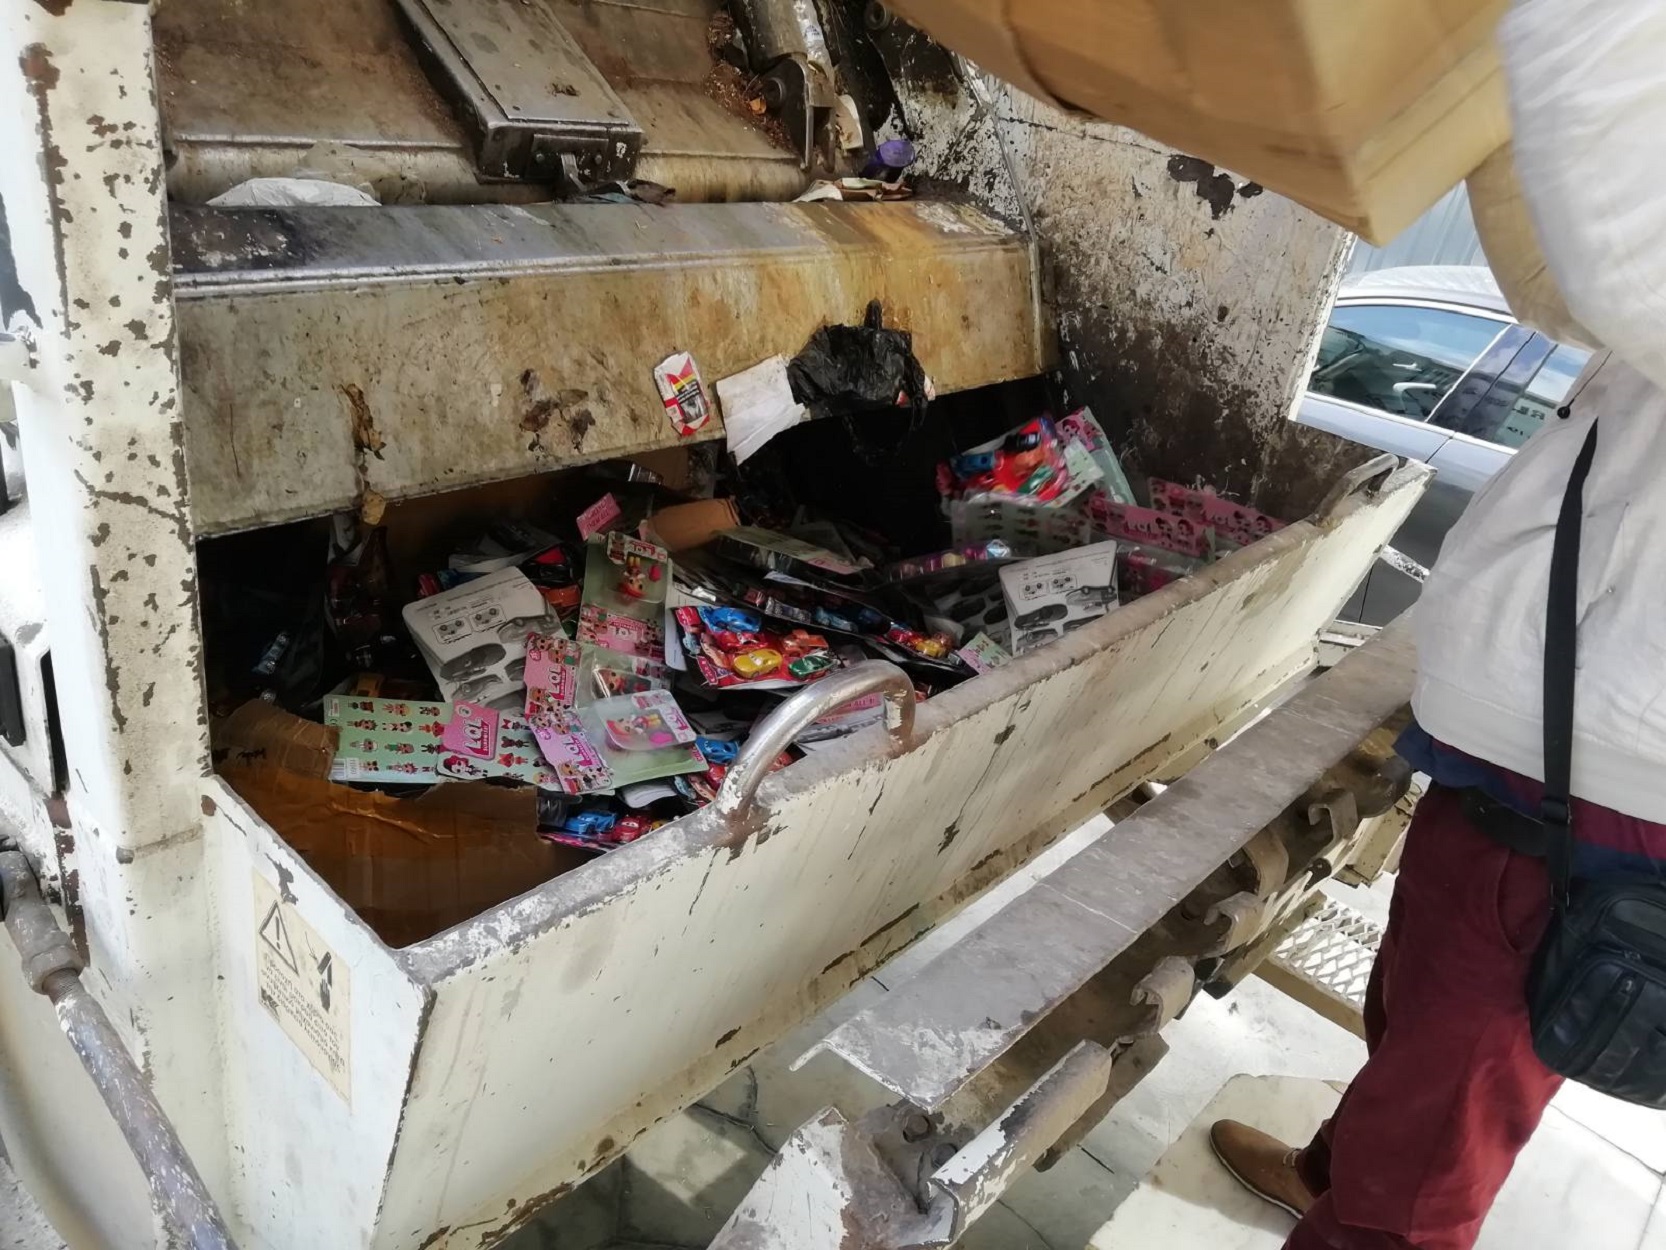 Παράνομη αποθήκη παιχνιδιών εντοπίστηκε στο Ρέντη! Κατασχέθηκαν και καταστράφηκαν τα παιχνίδια